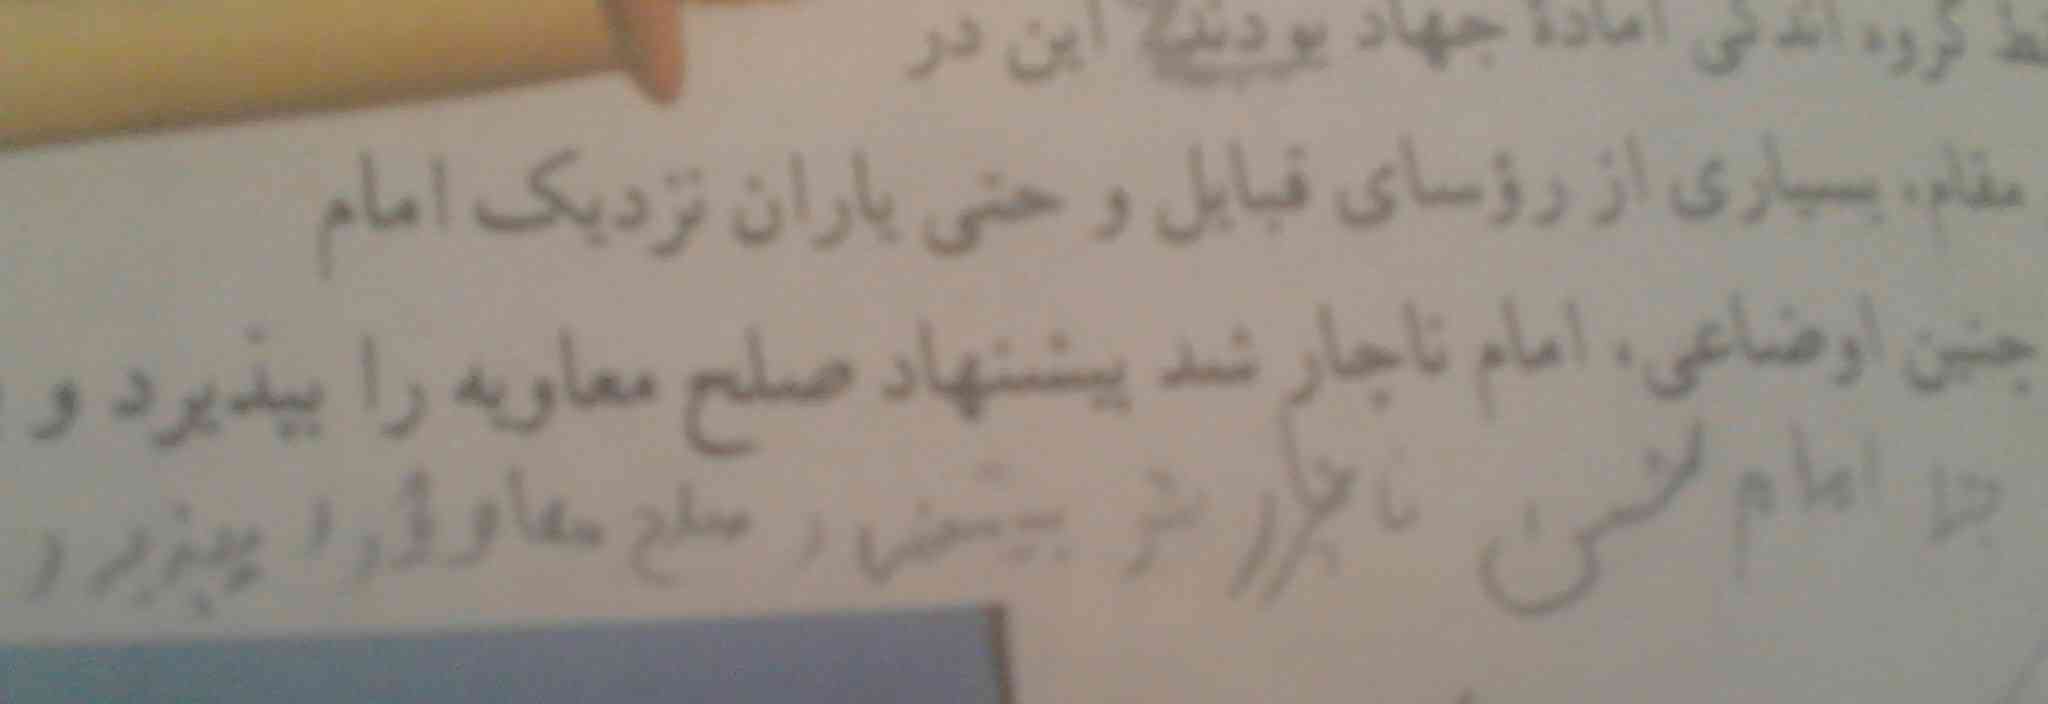 چرا امام حسن علیه السلام ناچار شد صلح معاویه را بپزیرد?
ممنون میشم اگه جواب رو بدین:-)